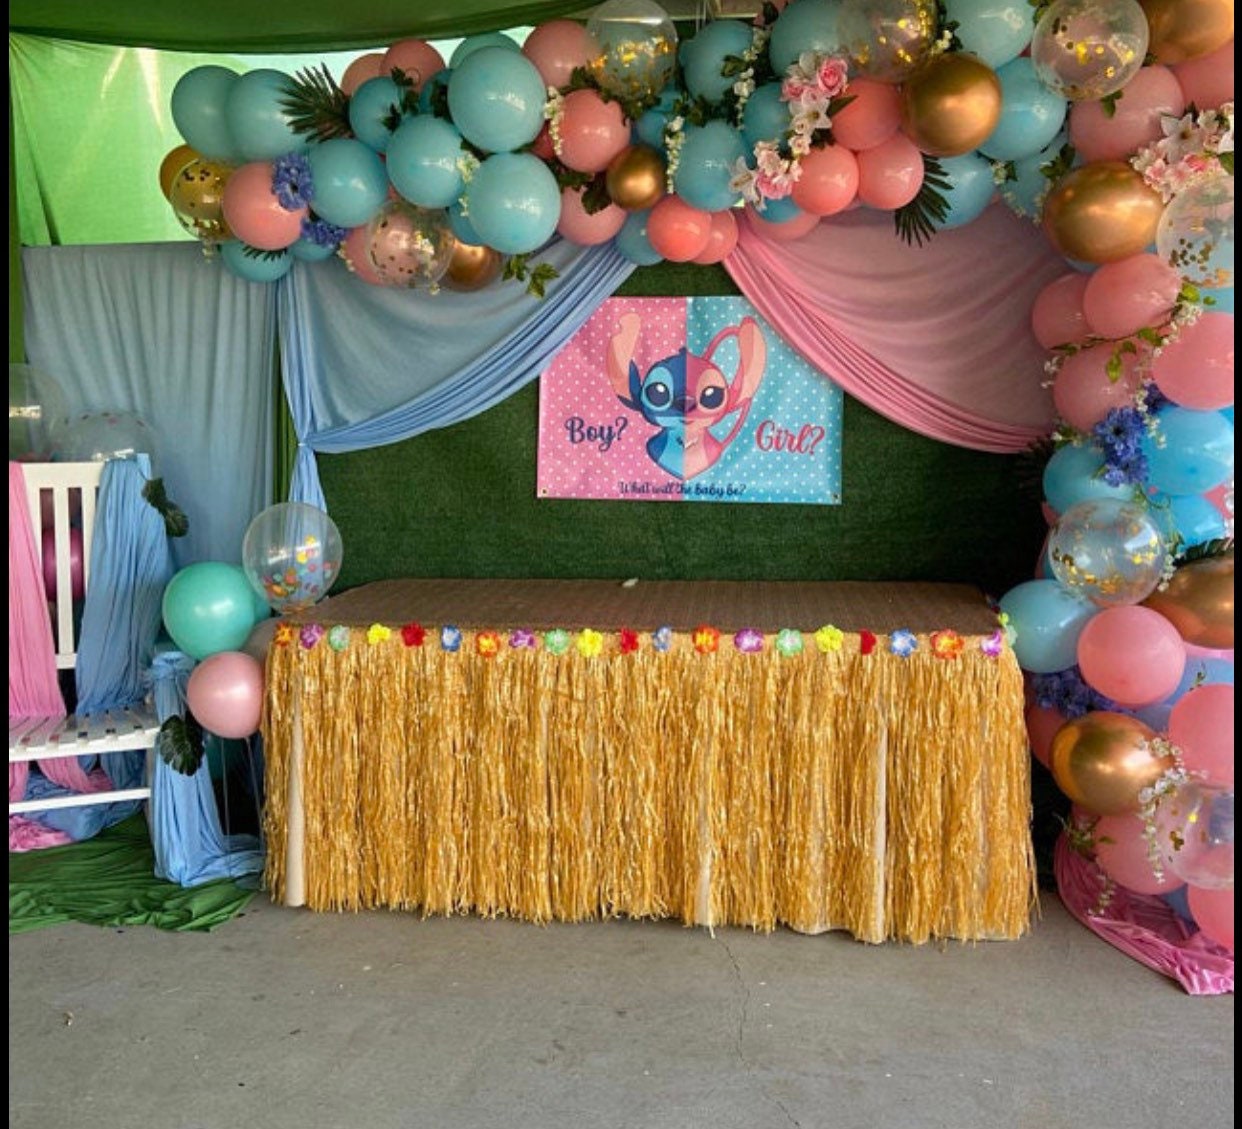 Lilo et Stitch Party Supplies - 8 Pcs Décoration de Fête, Ballons